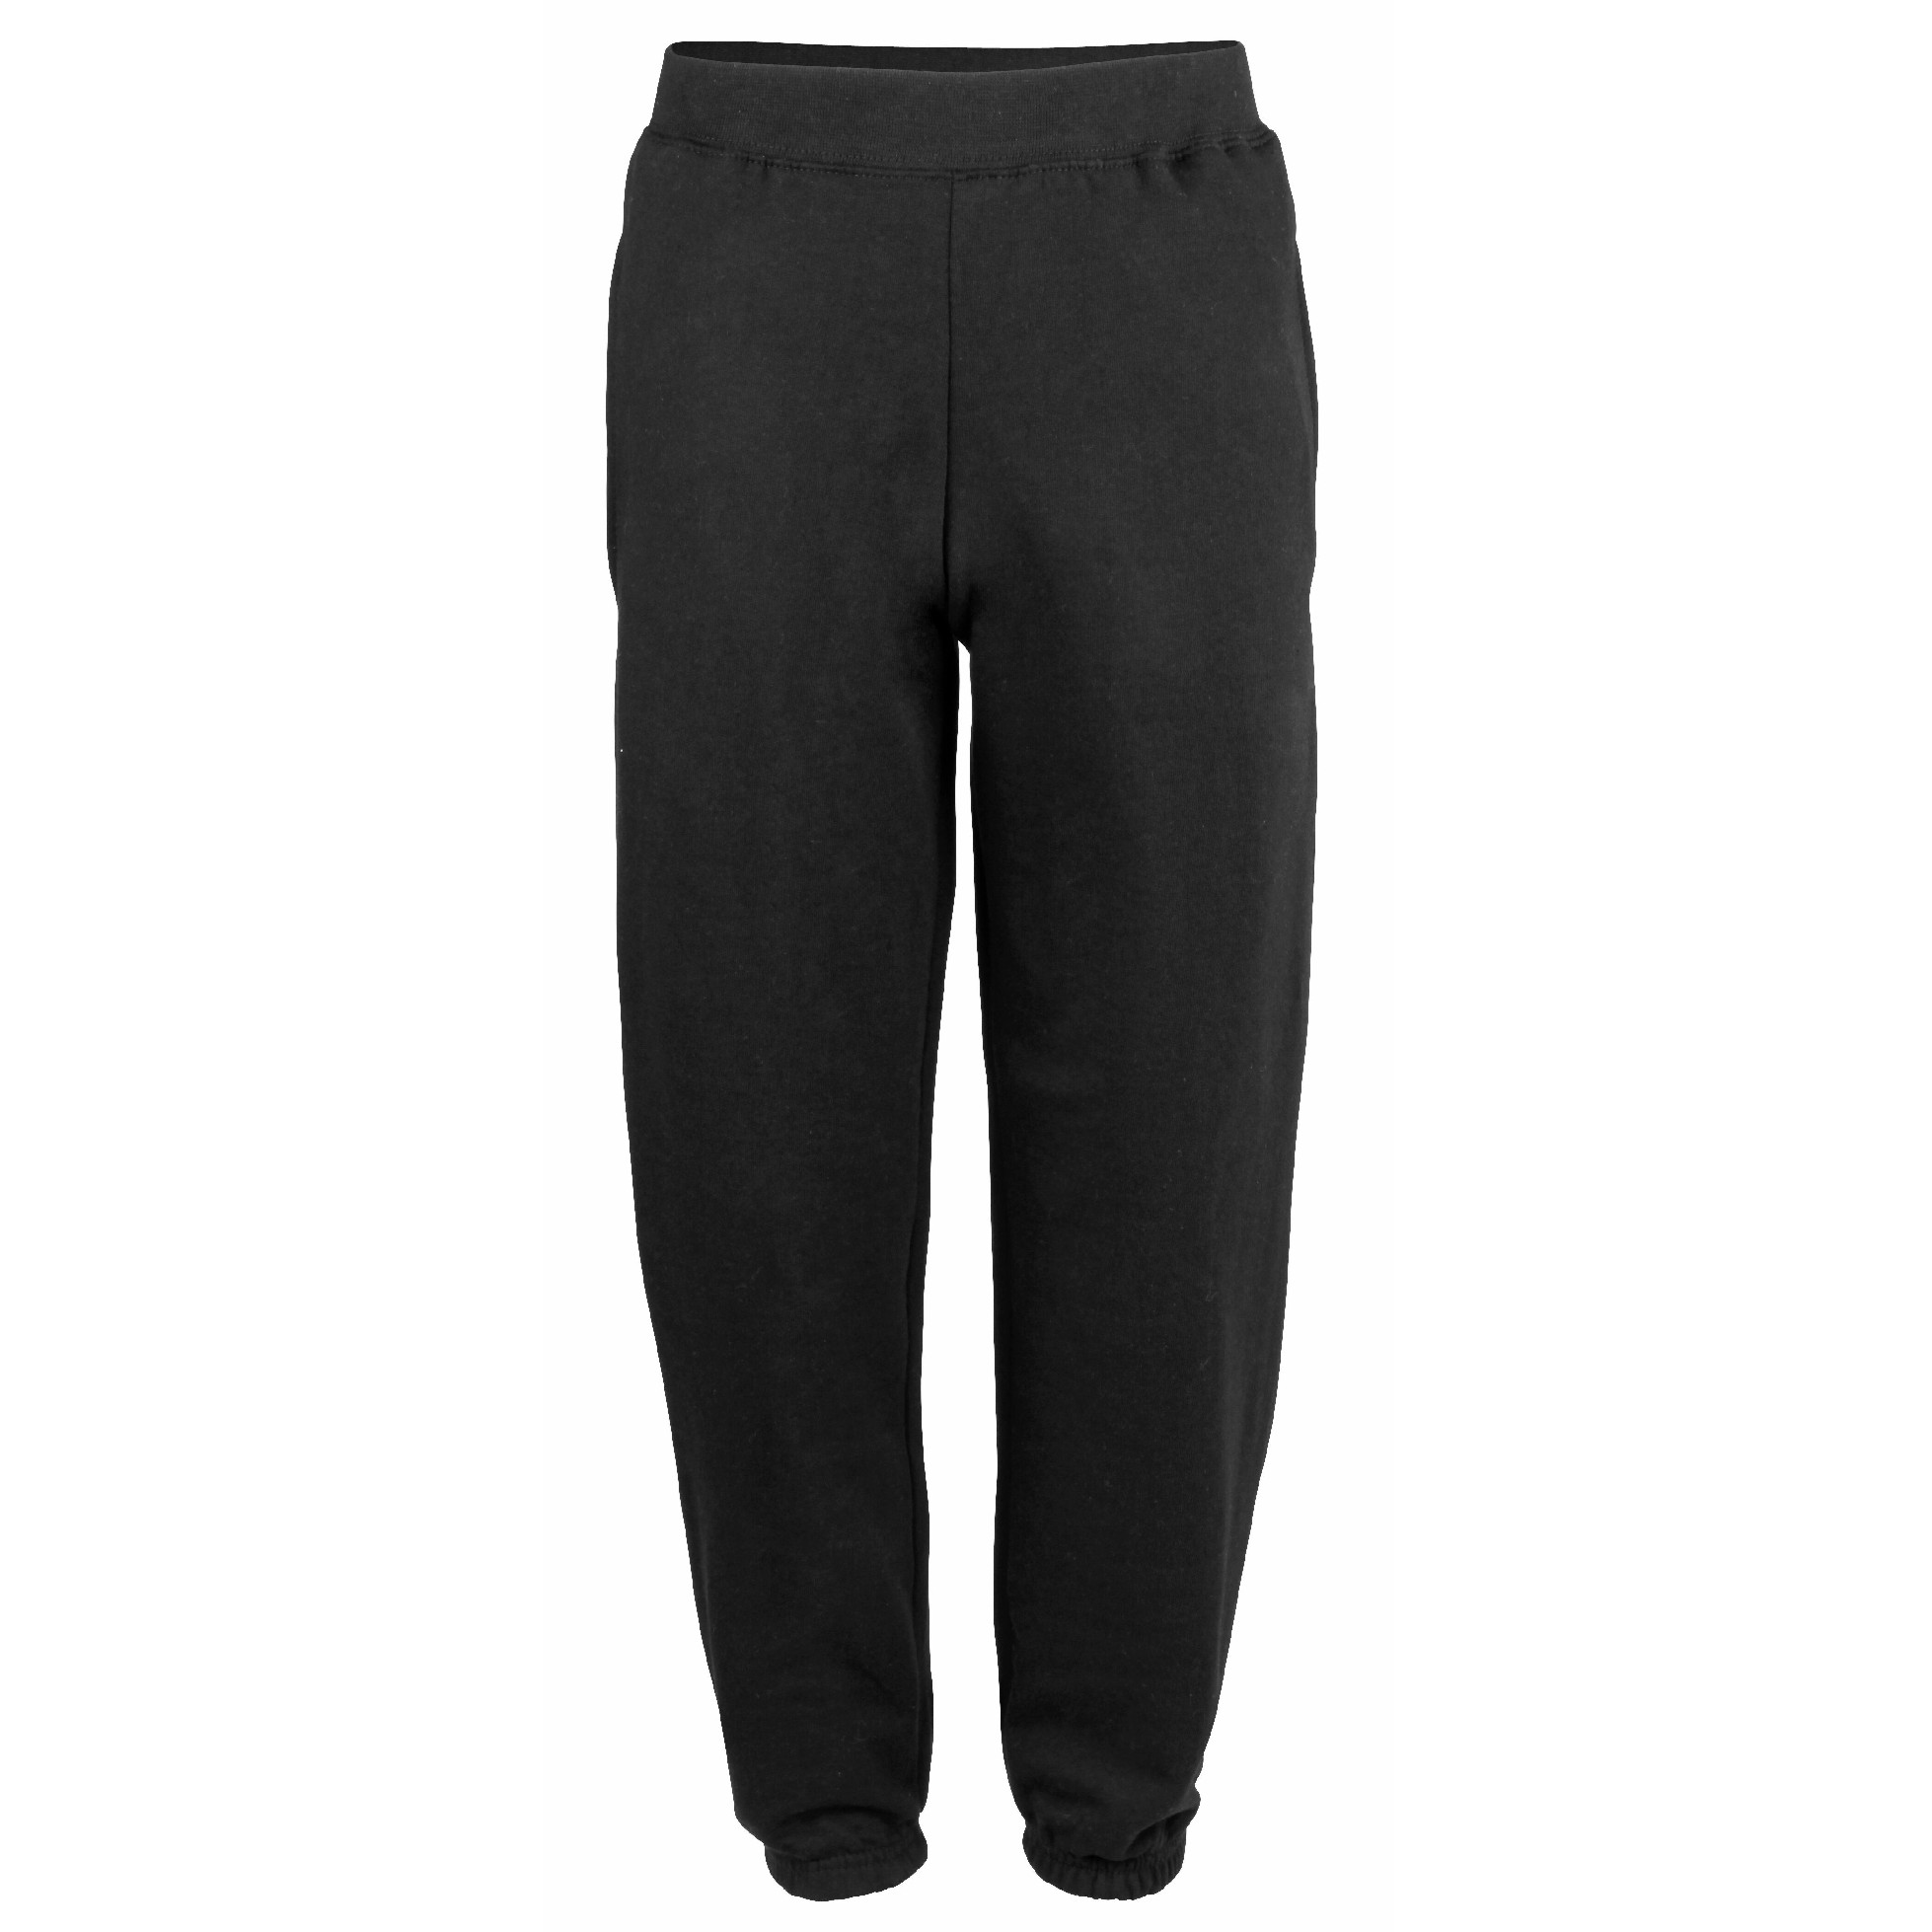 Black Cuffed Sweatpants - Teejac